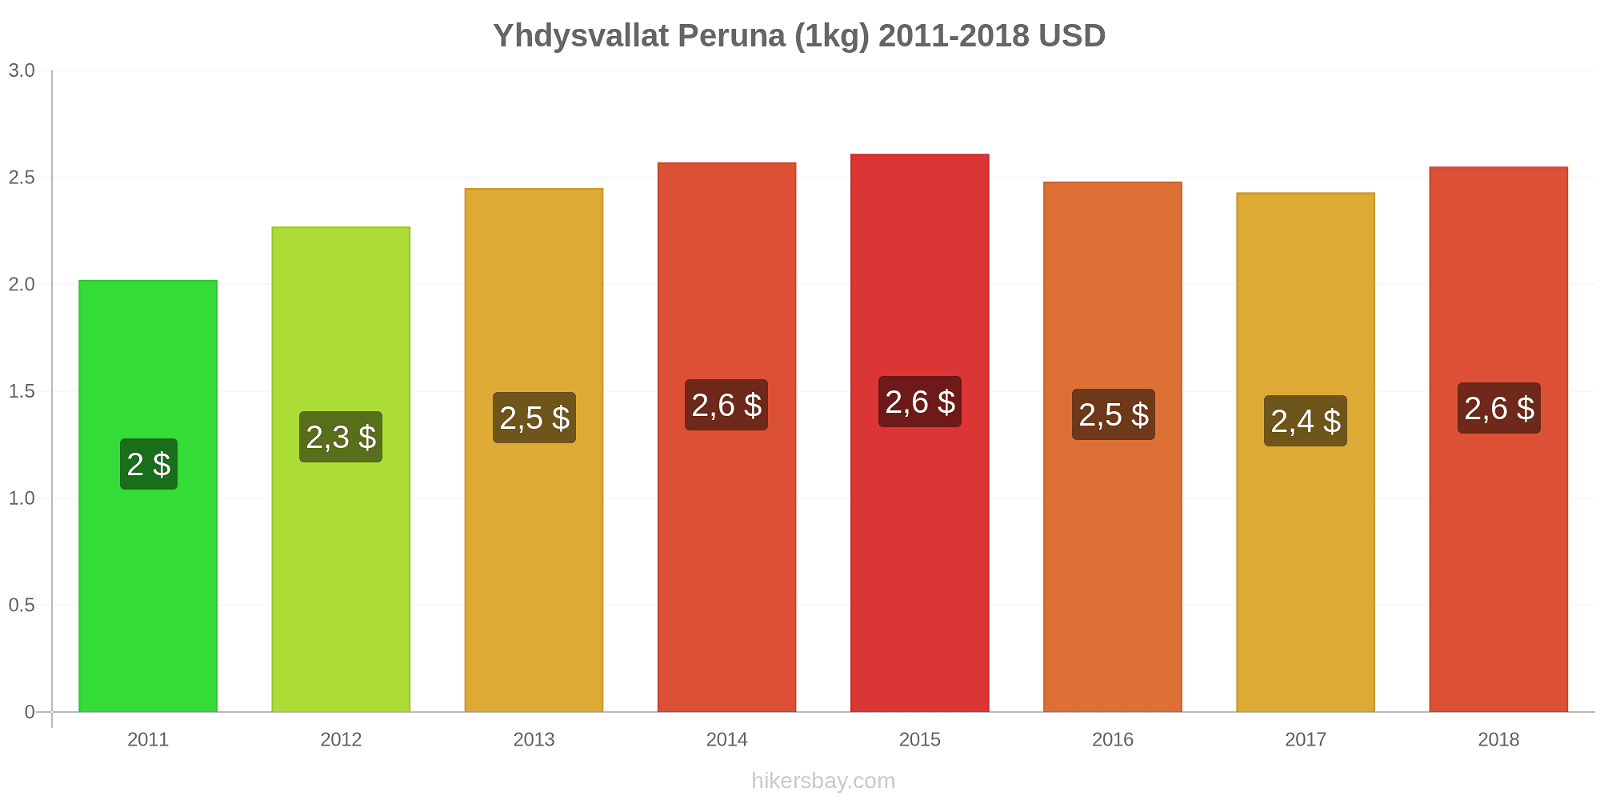 Yhdysvallat hintojen muutokset Peruna (1kg) hikersbay.com